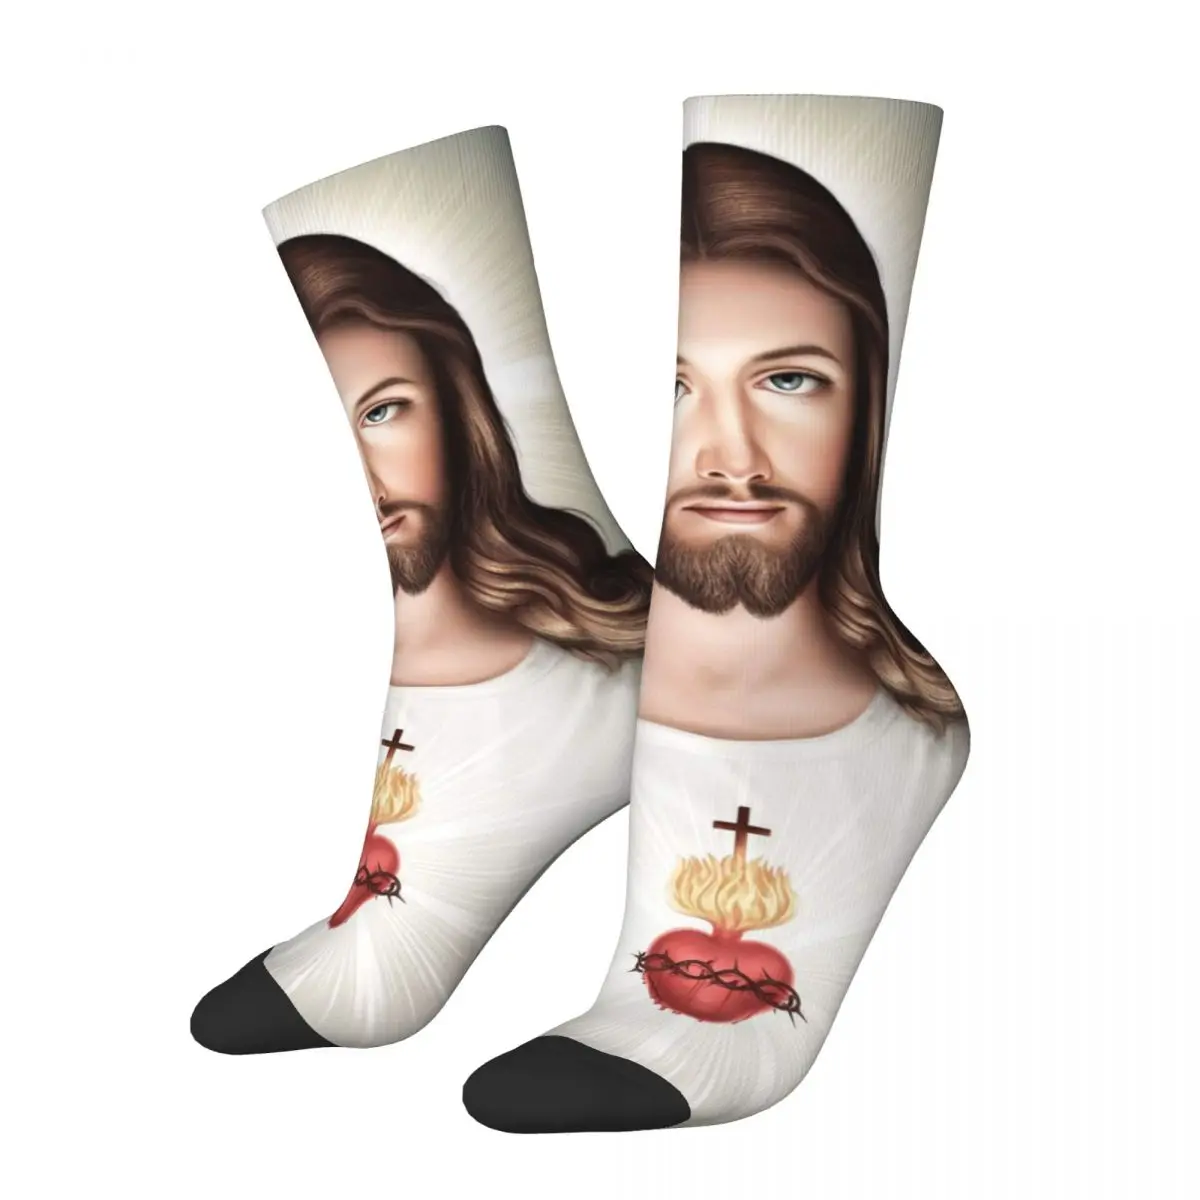 

Holy Jesus Christ Sacred Heart Socks Merch For Men Women Religious Catholic Cozy Socks Cute Birthday Present